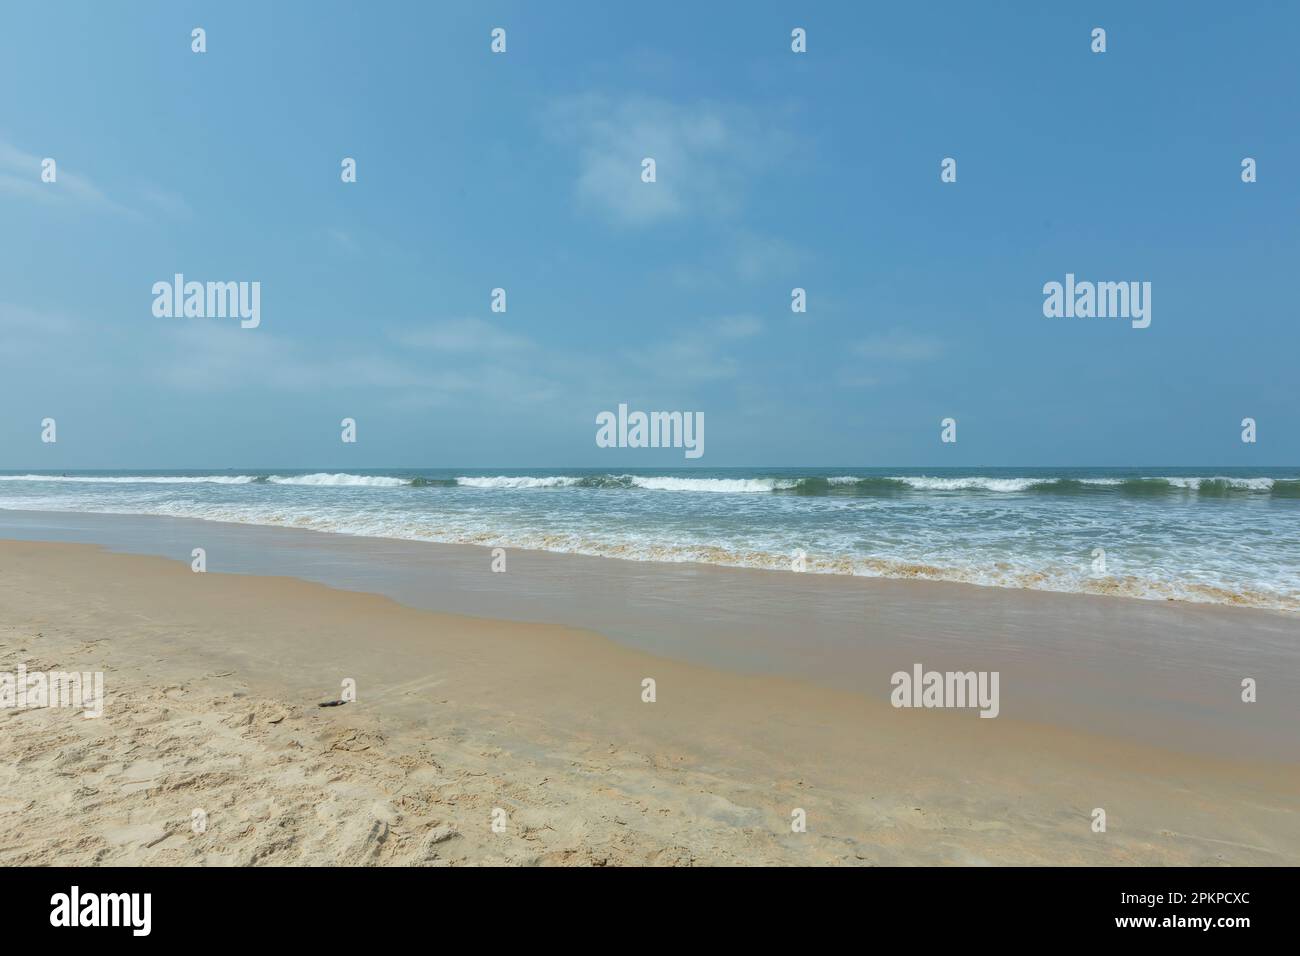 Benaulim Sunny Beach ist ein beliebtes Reiseziel am Meer im indischen Bundesstaat Goa. Der Strand ist bekannt für seinen goldenen Sand und das klare blaue Wasser Stockfoto